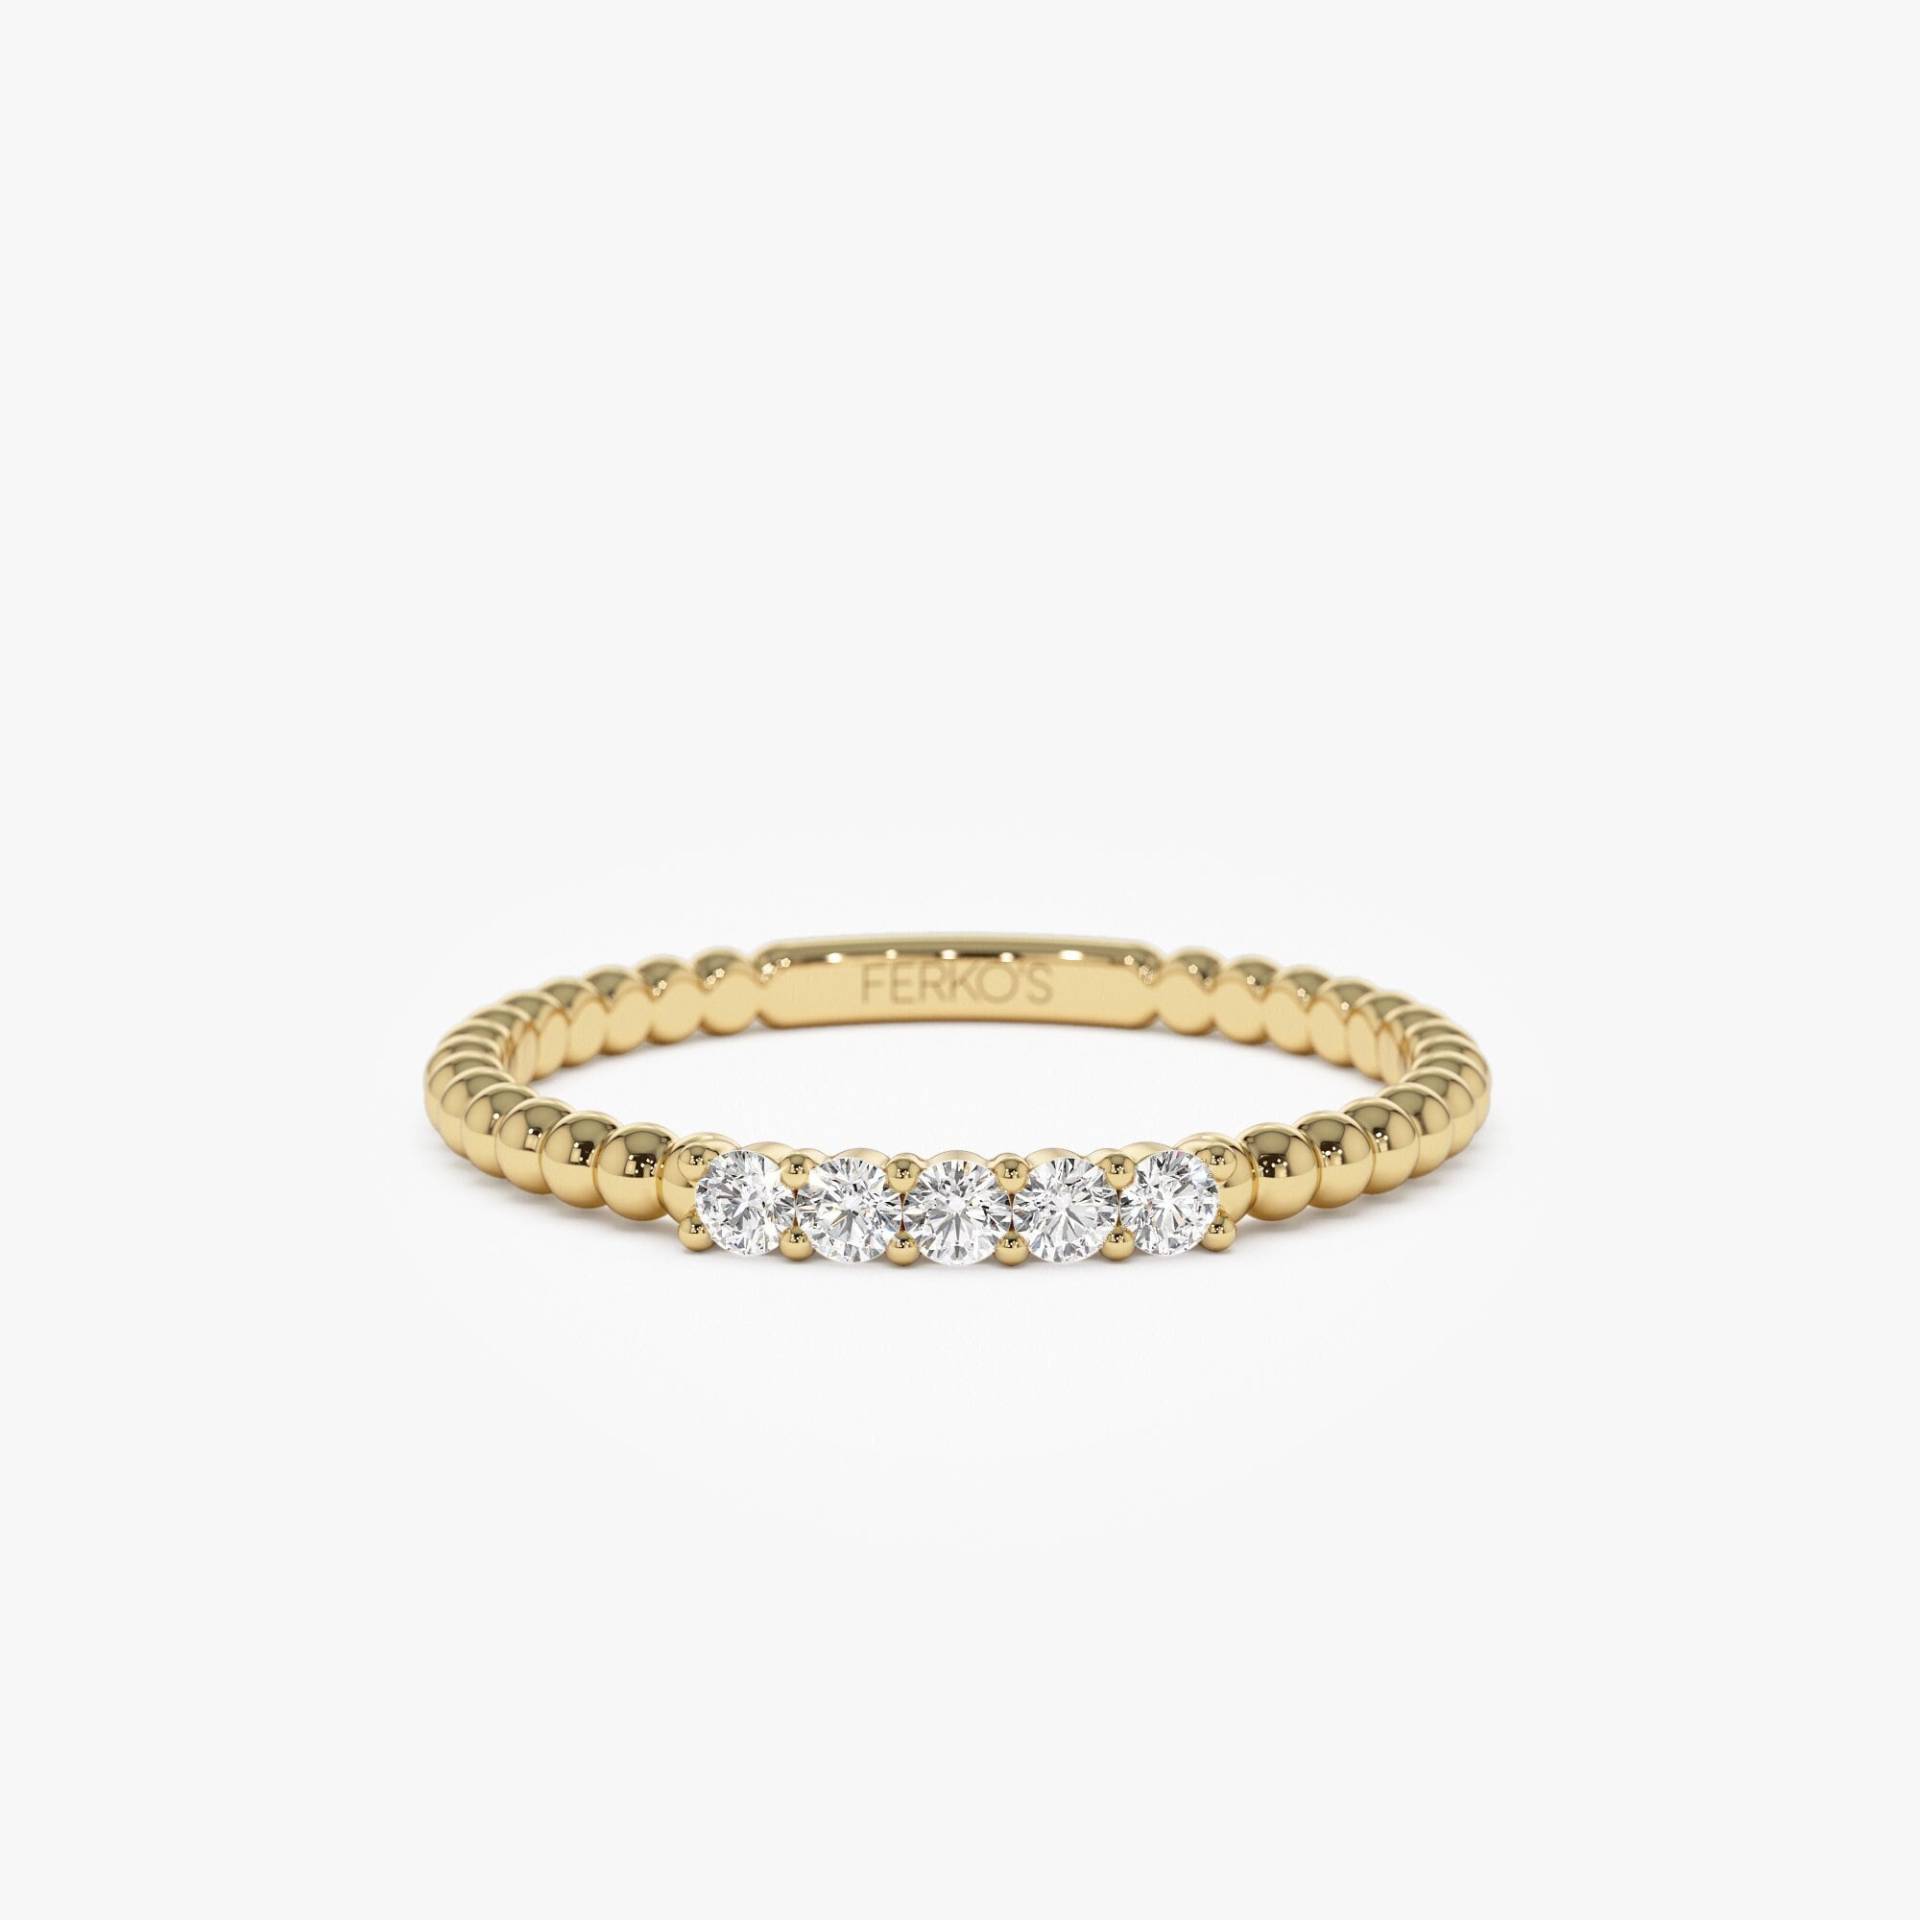 14K Gold Stapelring, Zierliche Perlen Diamant Band, Massiv Minimalist Stapelbare 5 Steinperlen Ring, Perfekte Push Geschenk von FerkosFineJewelry